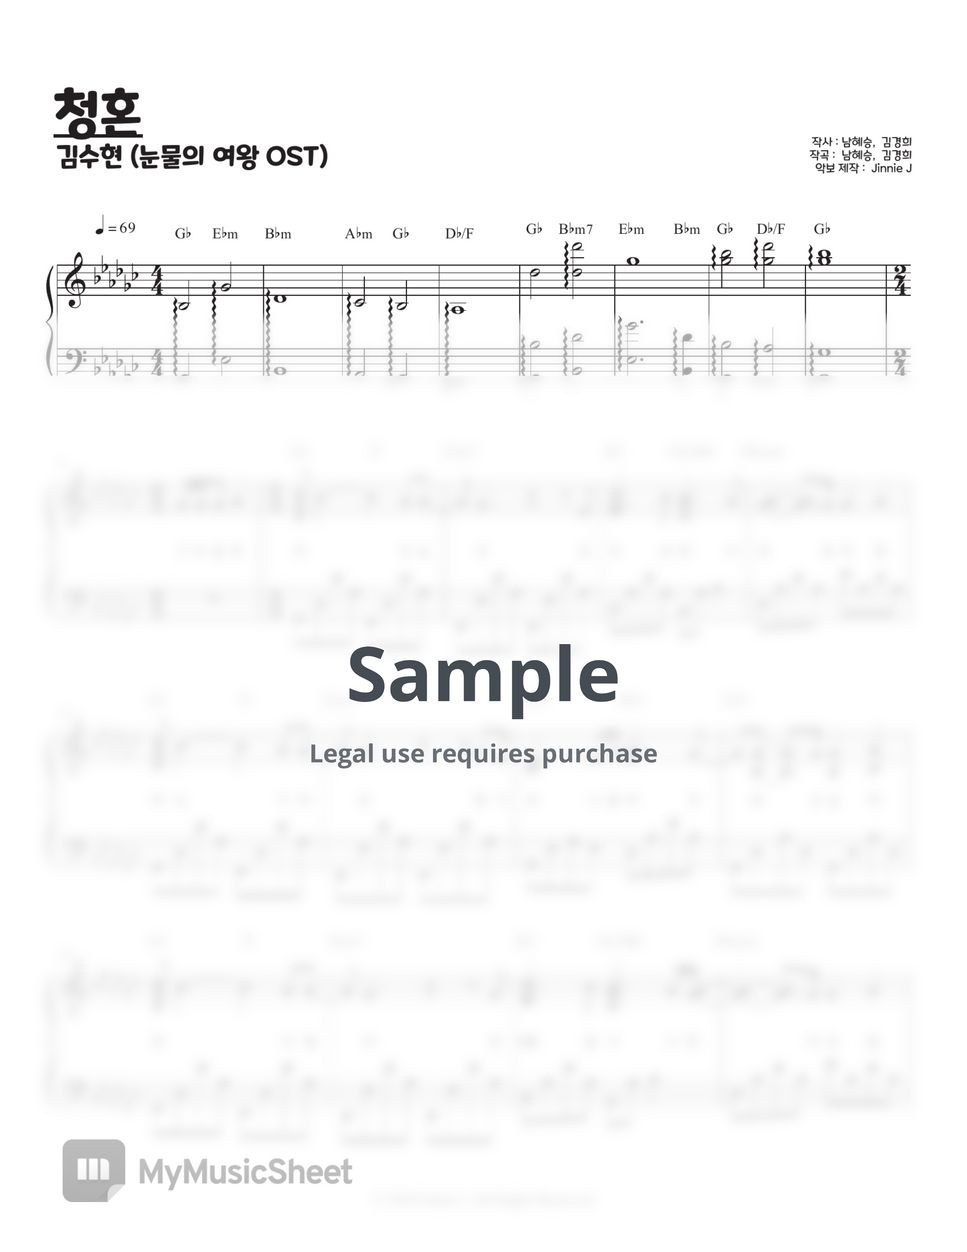 김수현 - 청혼 (눈물의 여왕 OST) (Gb key, G key) by Jinnie J